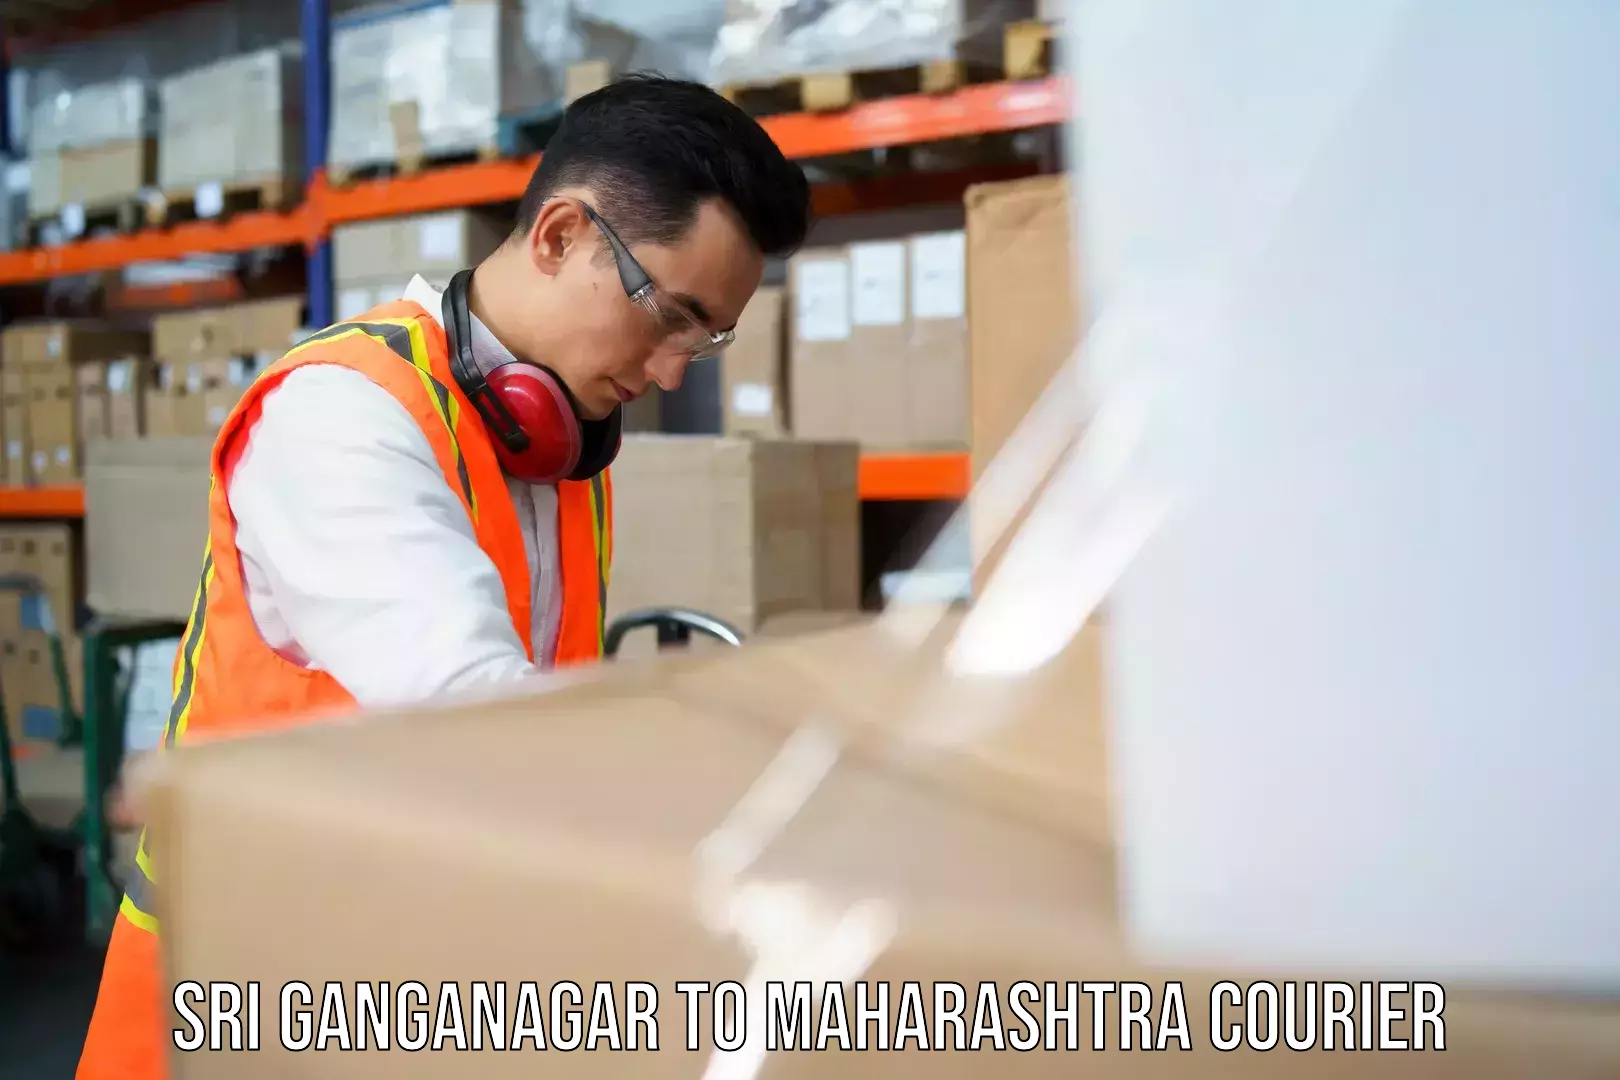 24-hour courier service Sri Ganganagar to Maharashtra